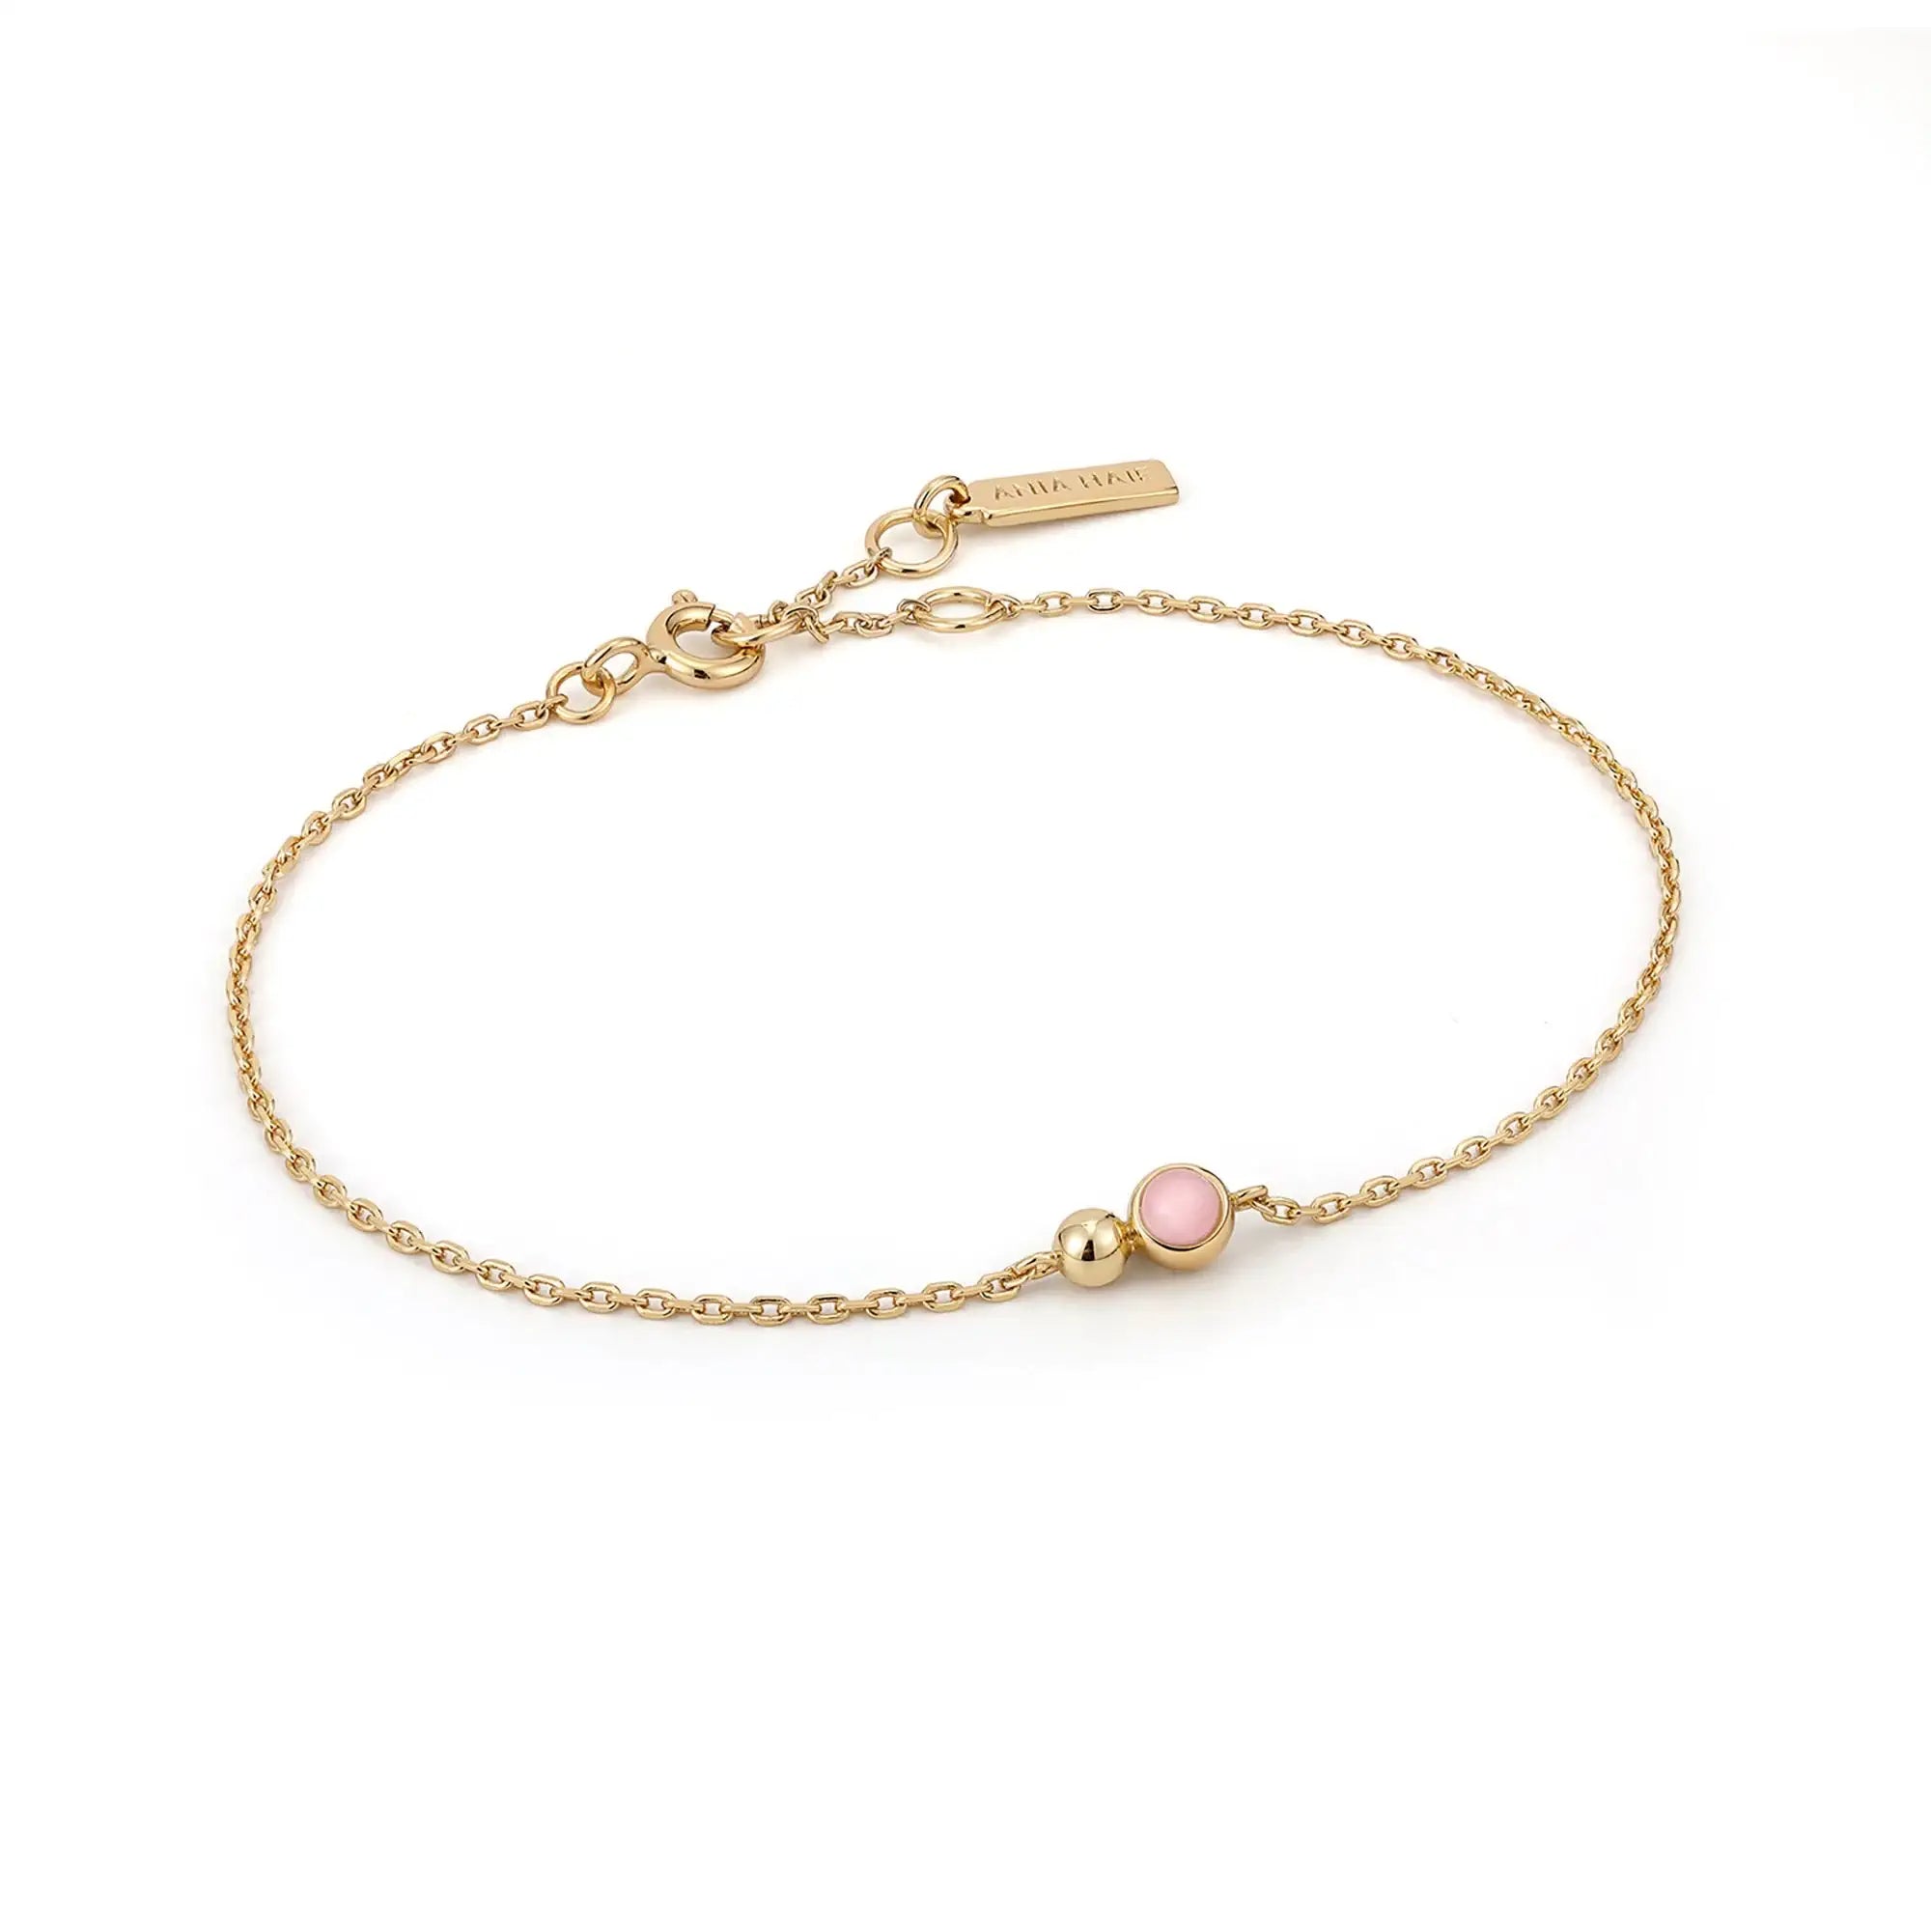 Orb Rose Quartz Chain Bracelet